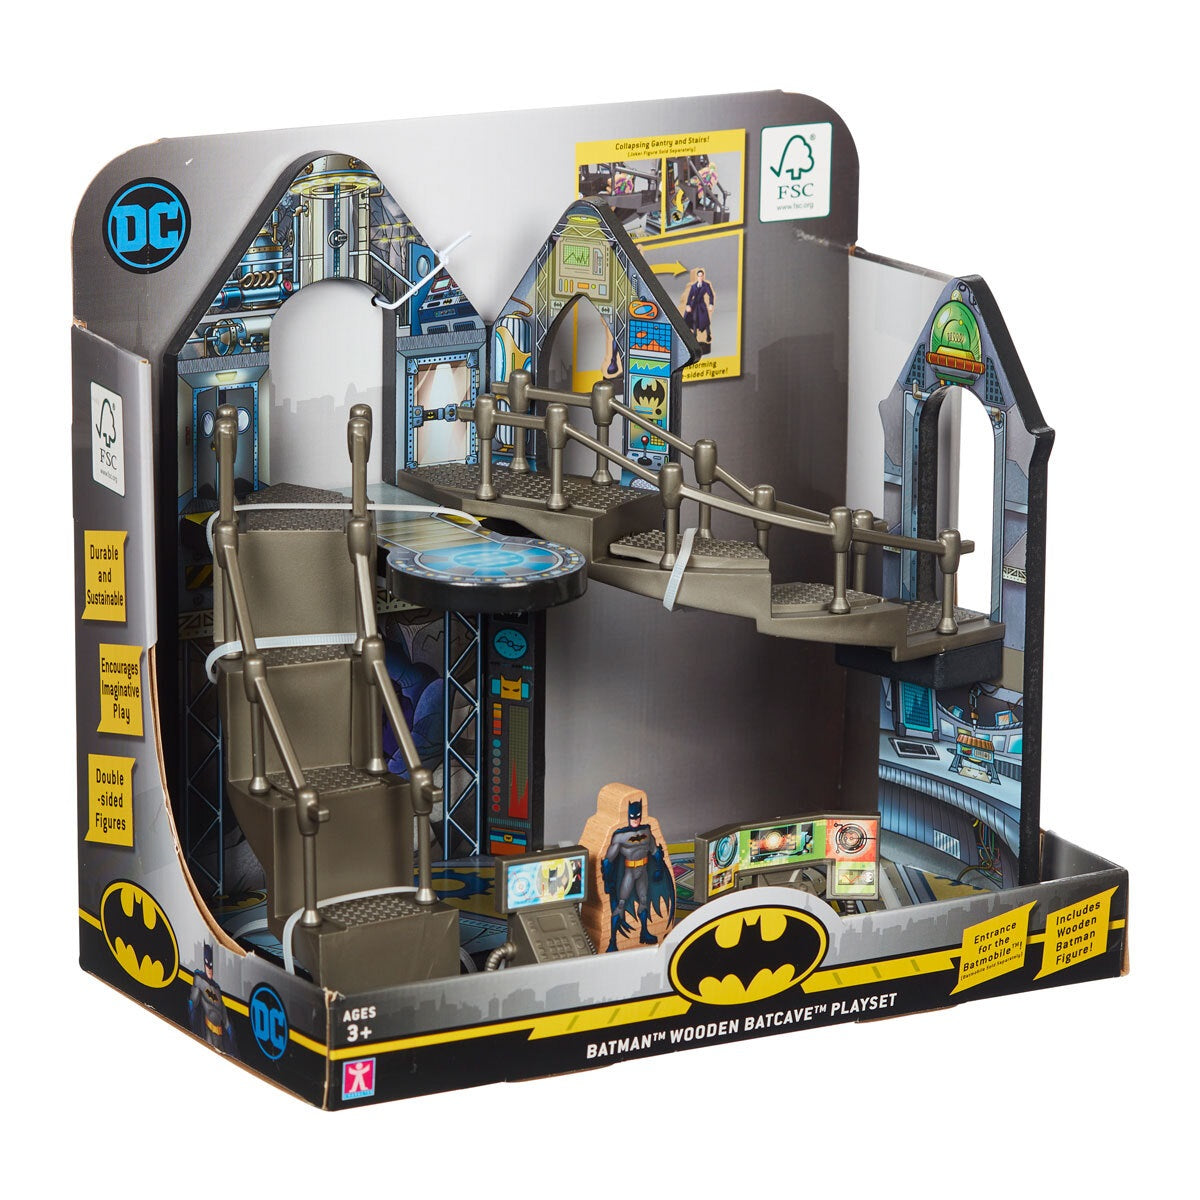 Batman Wooden Batcave Playset